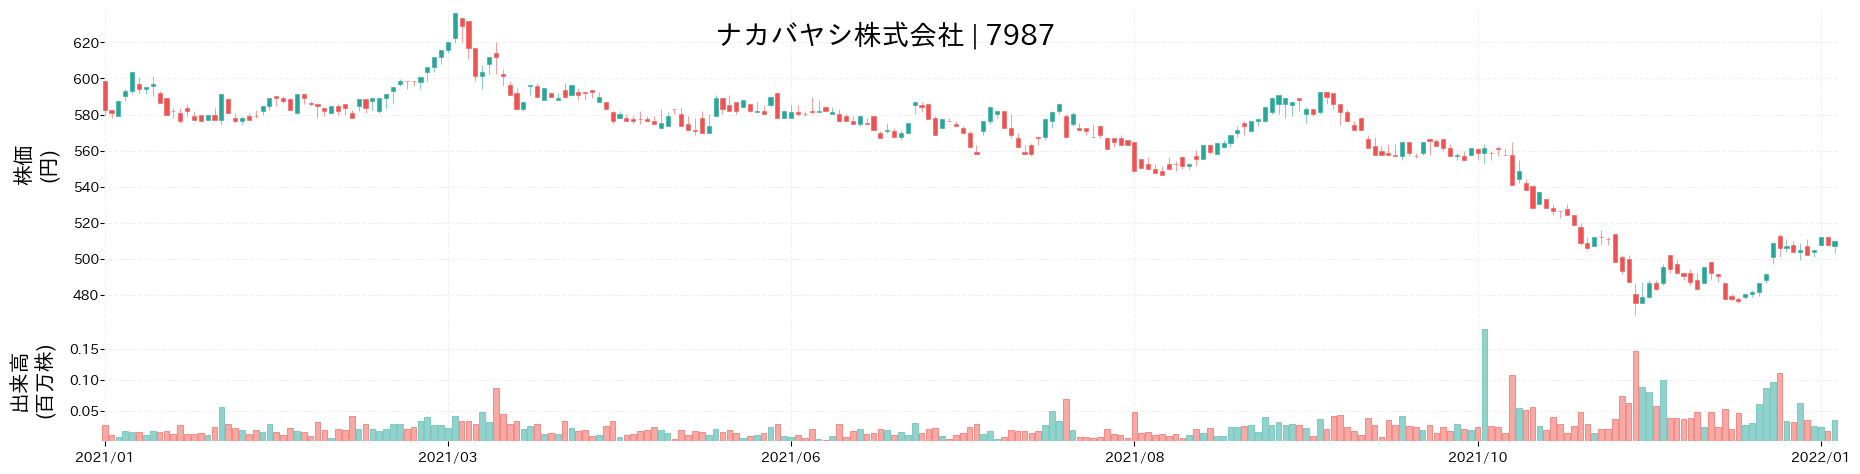 ナカバヤシの株価推移(2021)